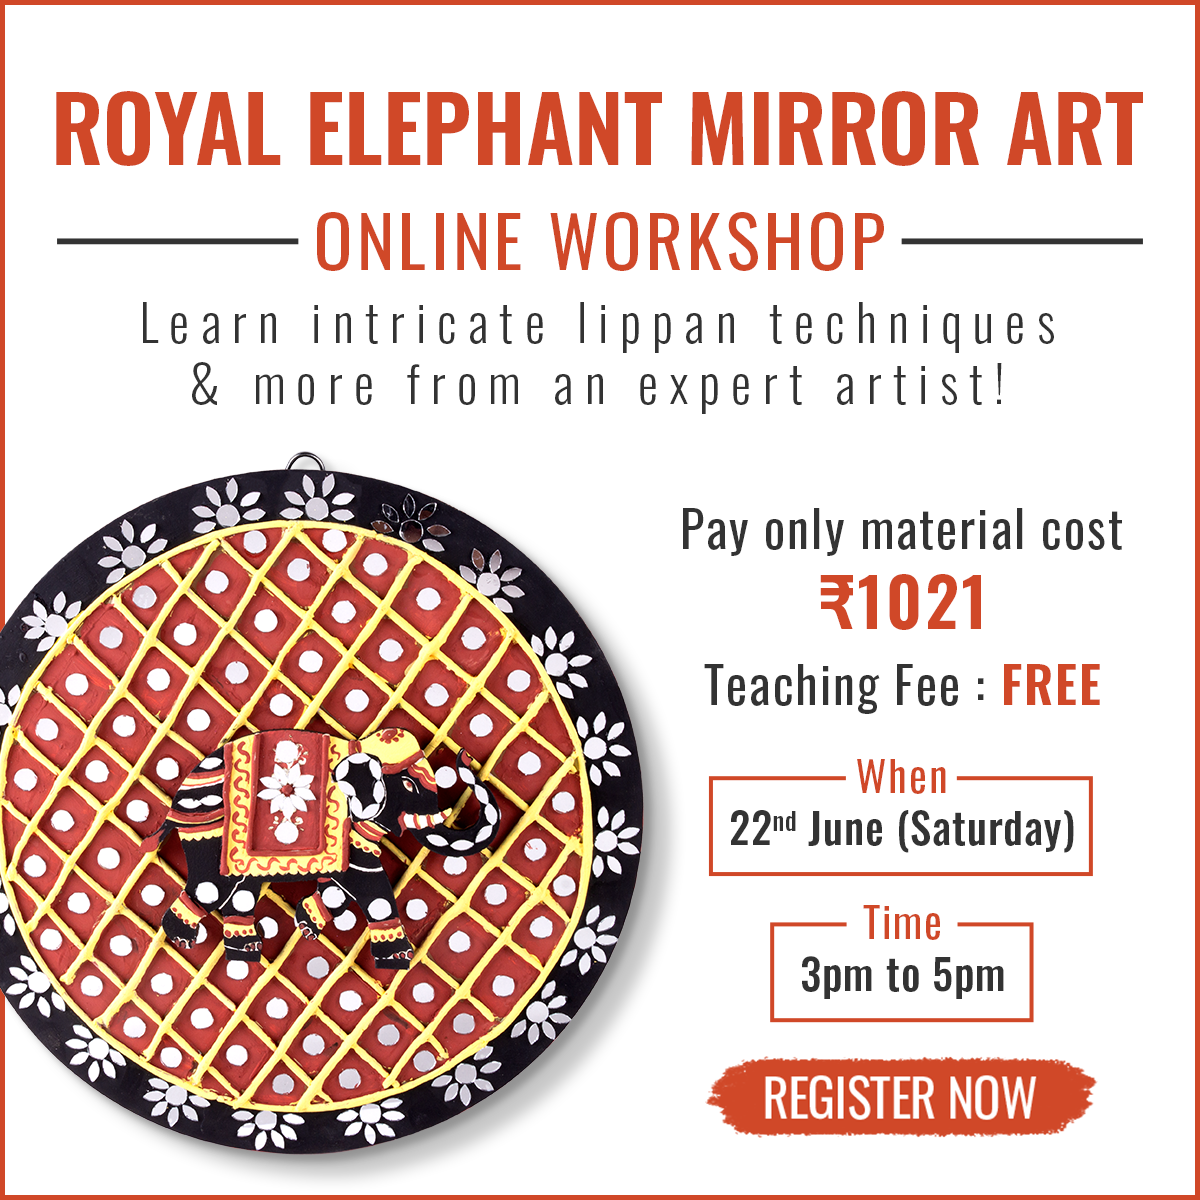 Royal Elephant Mirror Art Online Workshop